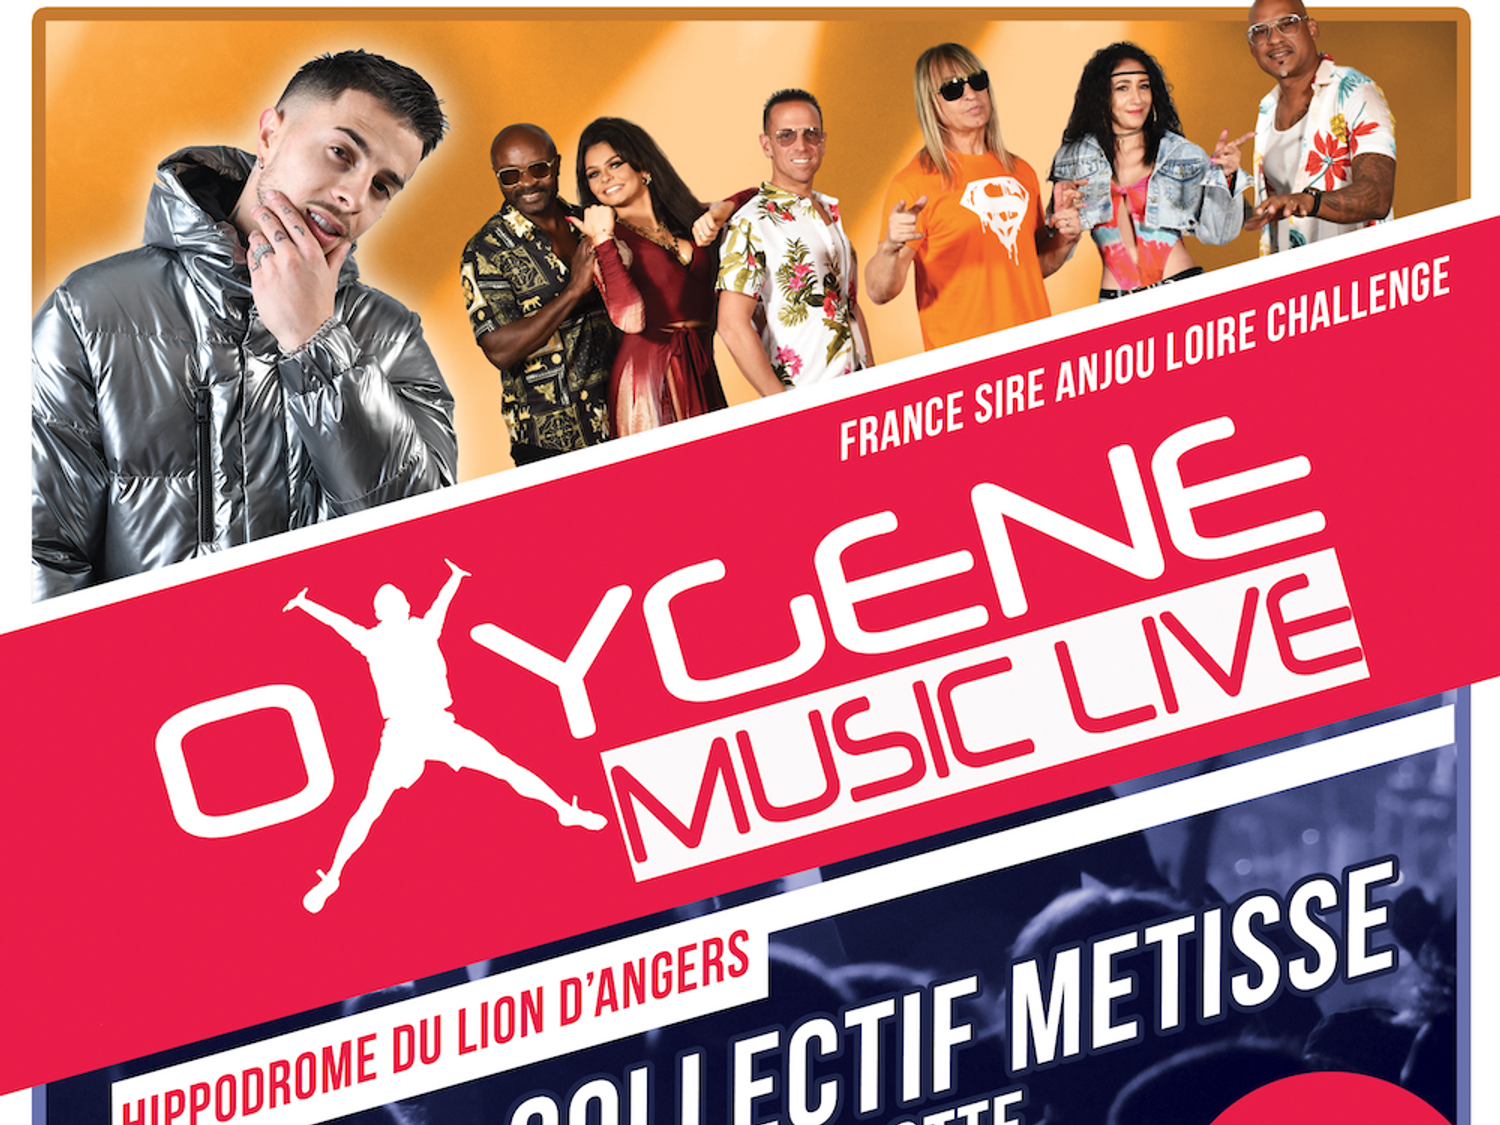 Gagnez vos invitations pour l'Oxygène Music Live du Lion d'Angers